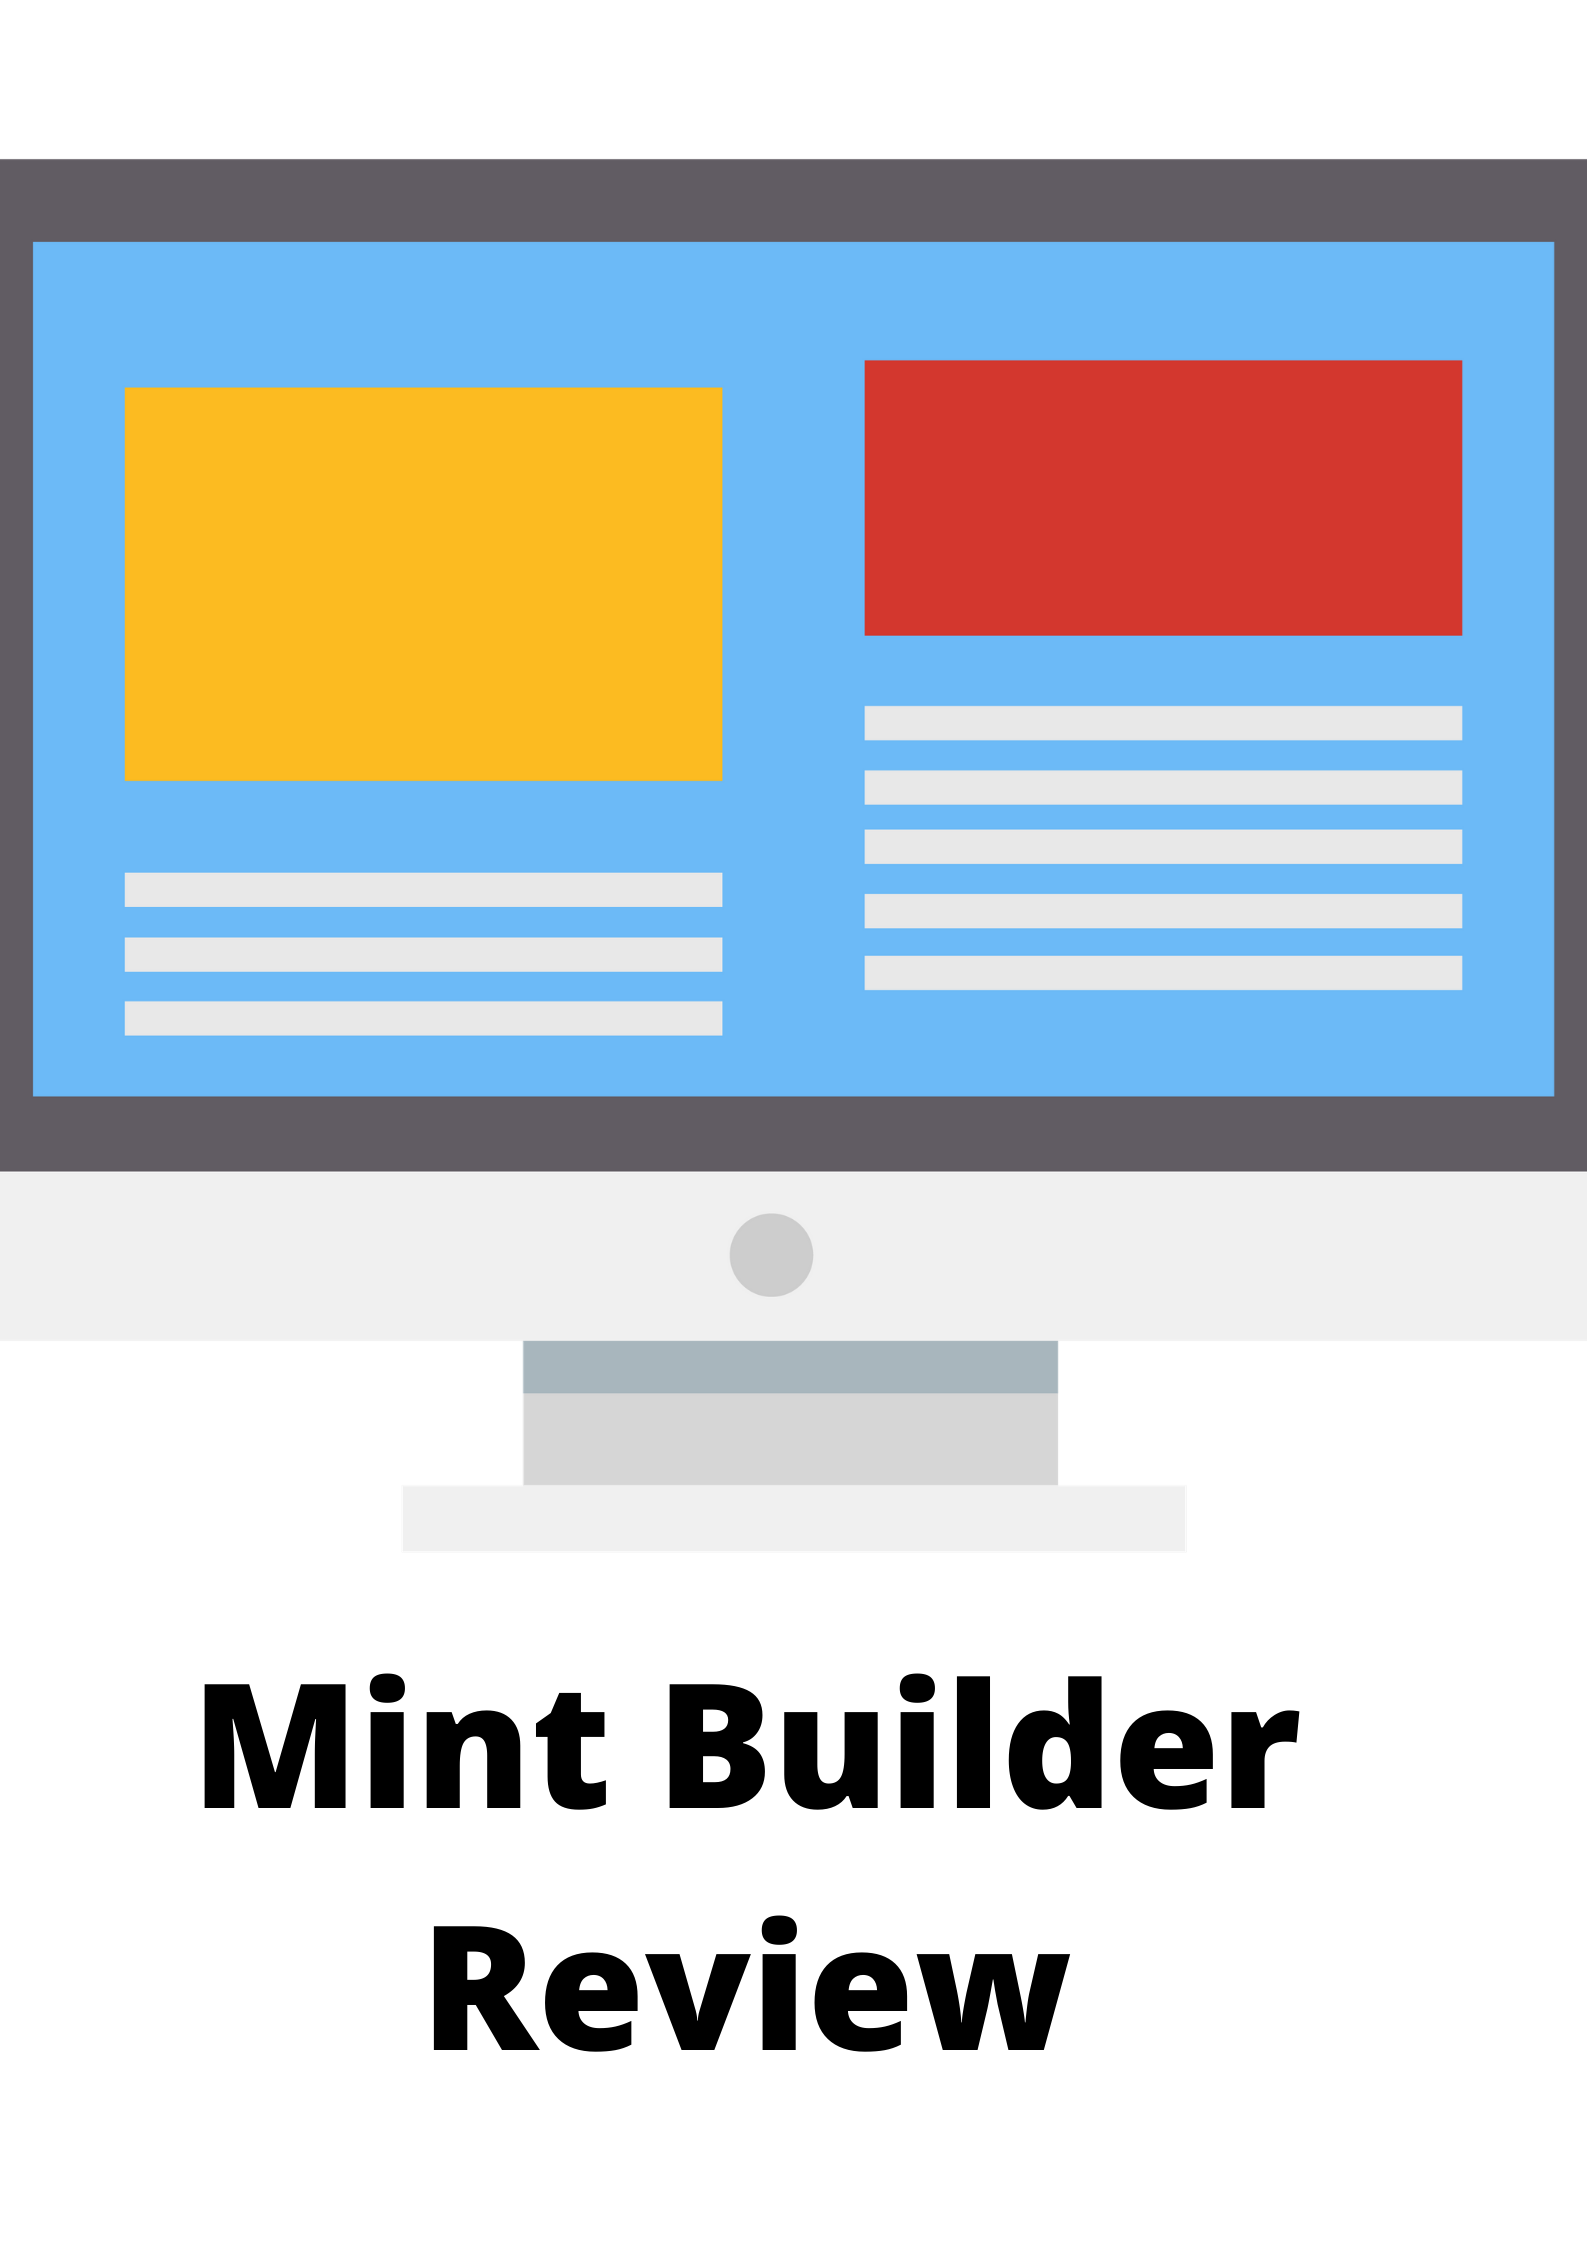 Mint Builder Review